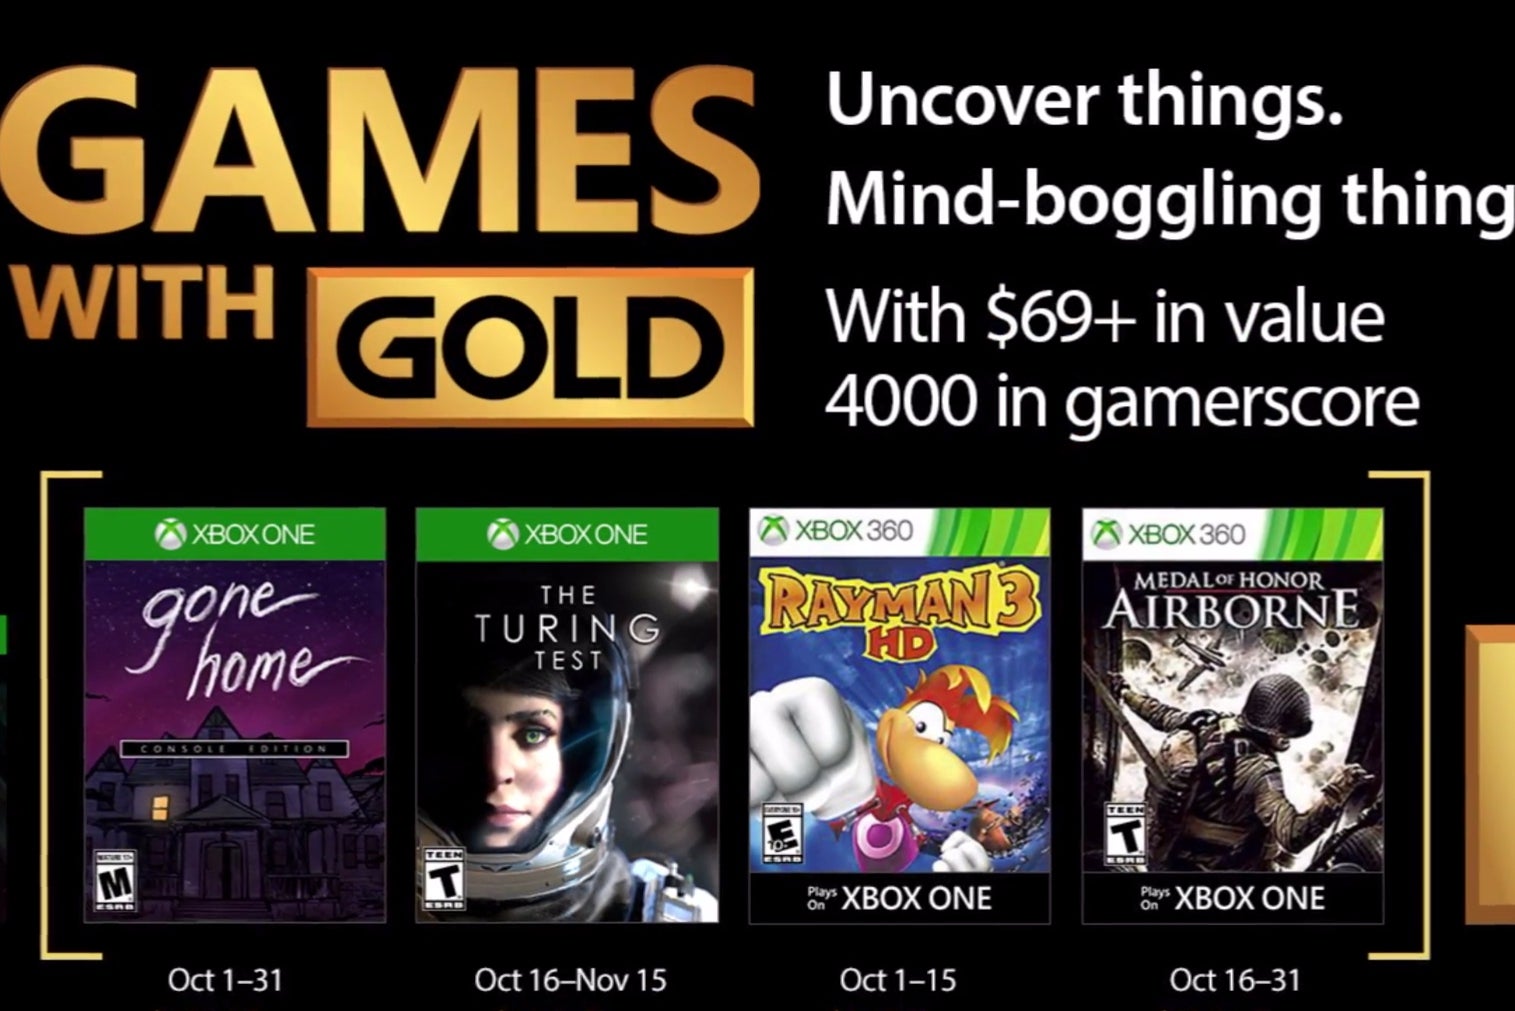 Bilder zu Xbox Games with Gold im Oktober mit Gone Home und The Turing Test